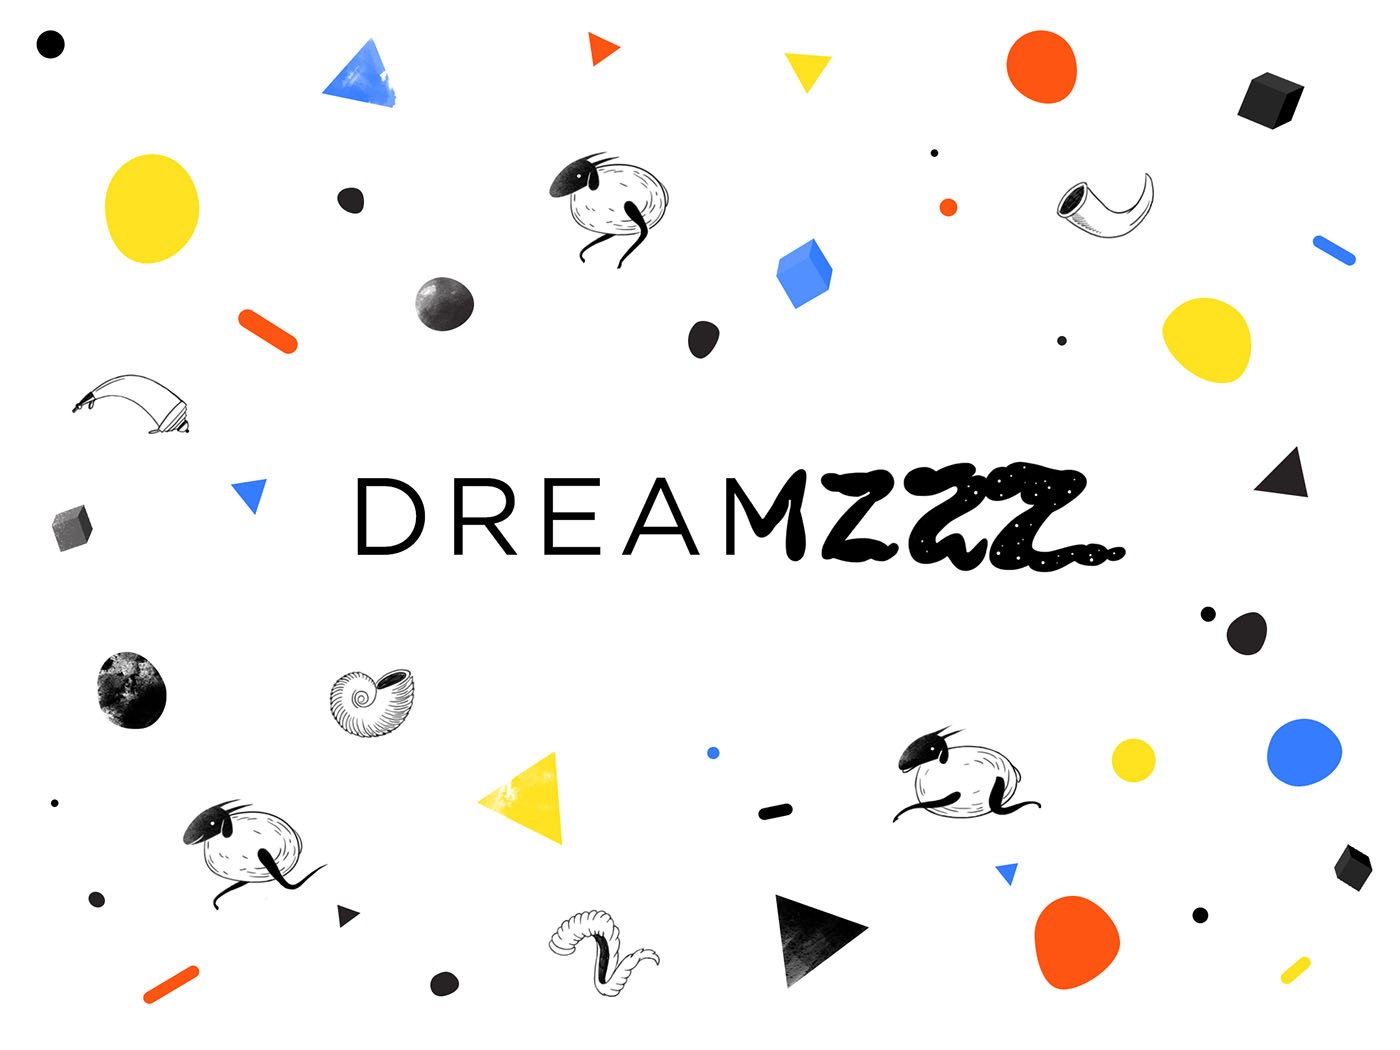 Dreamzzz04